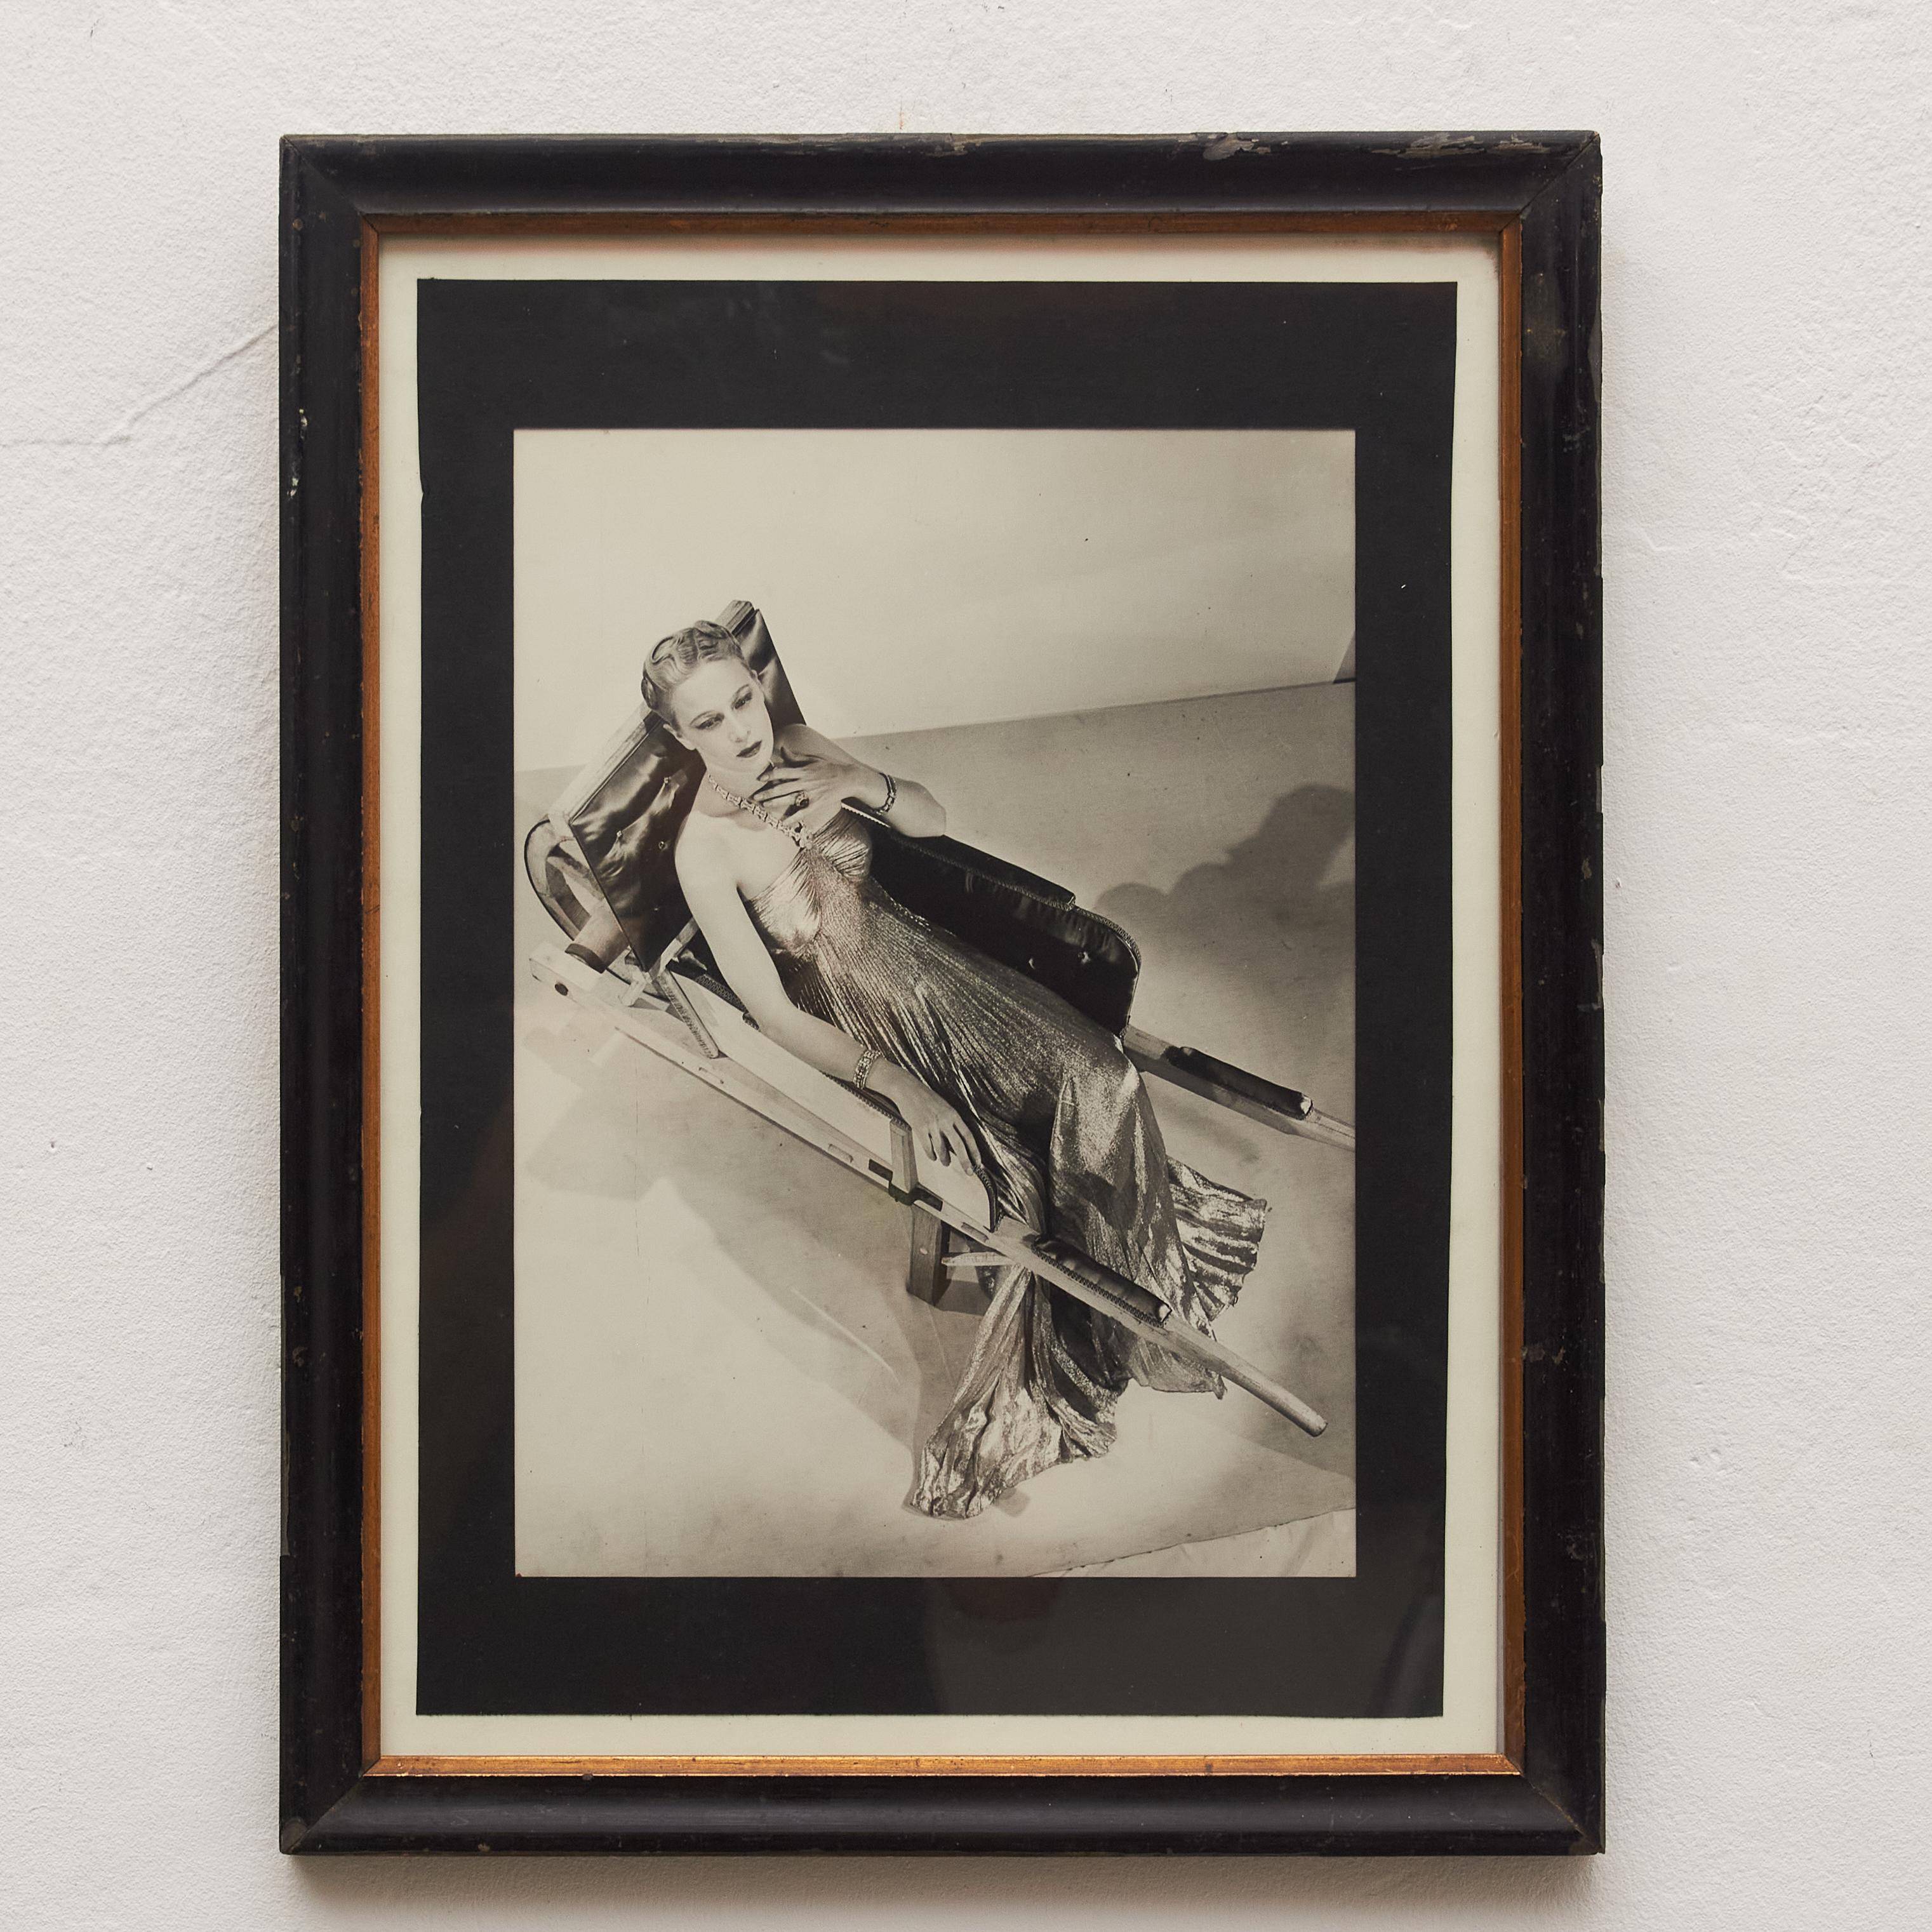 Diese außergewöhnliche Schwarz-Weiß-Fotografie entführt Sie in die rätselhafte Welt von Man Ray, einem Wegbereiter des DADA und des Surrealismus. Sorgfältig gerahmt in einem Rahmen aus dem frühen 20. Jahrhundert verkörpert dieses Meisterwerk die